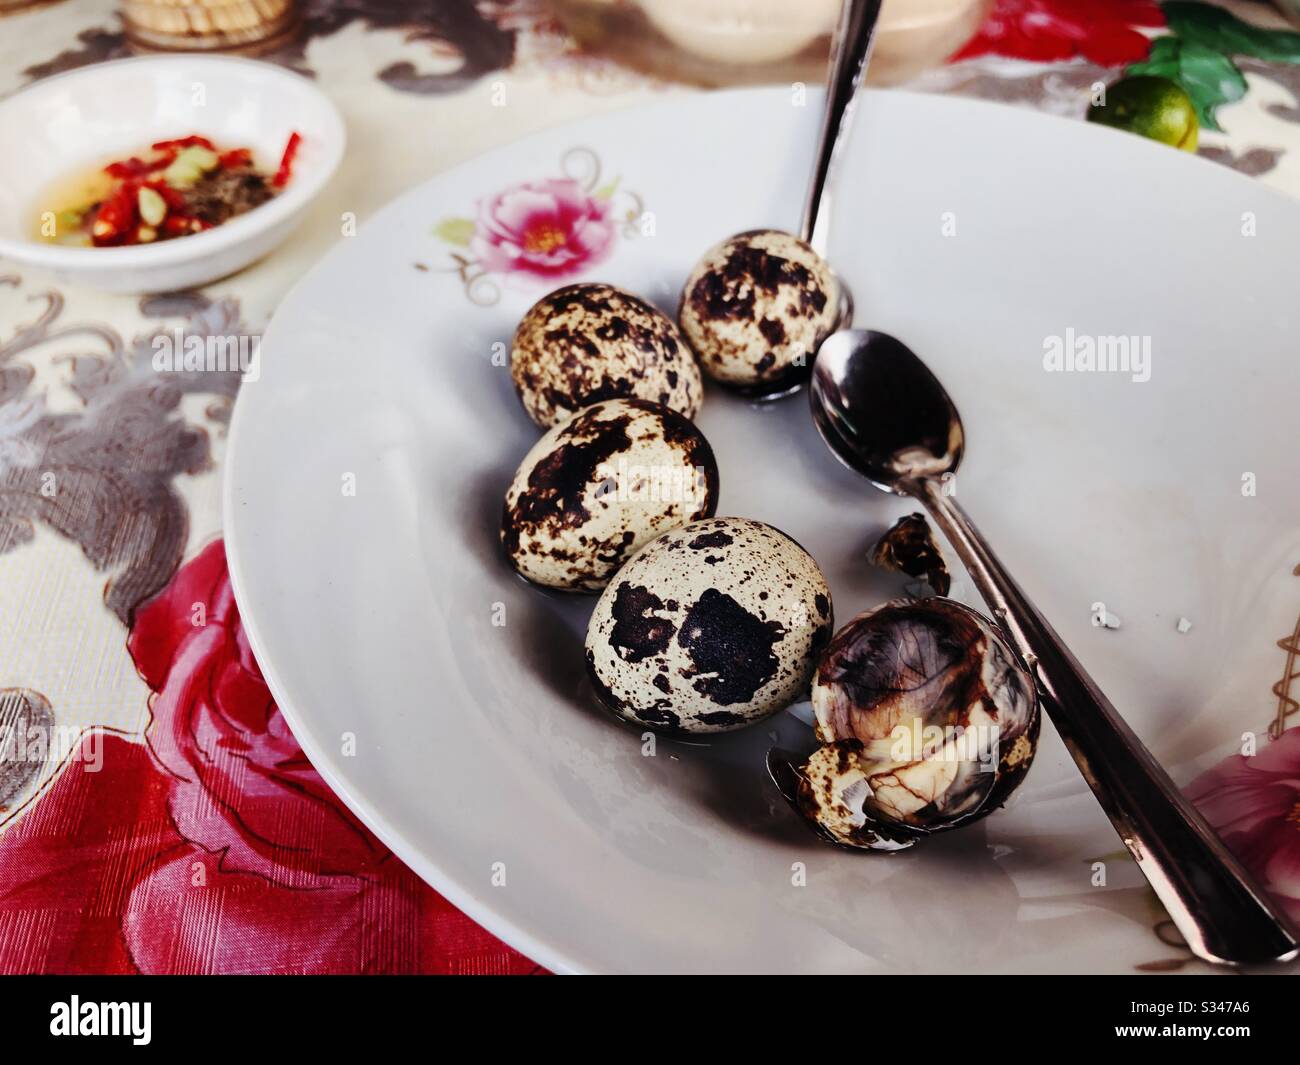 Balut (fertilised birds eggs) eaten as a delicacy in Dalat, Vietnam Stock Photo